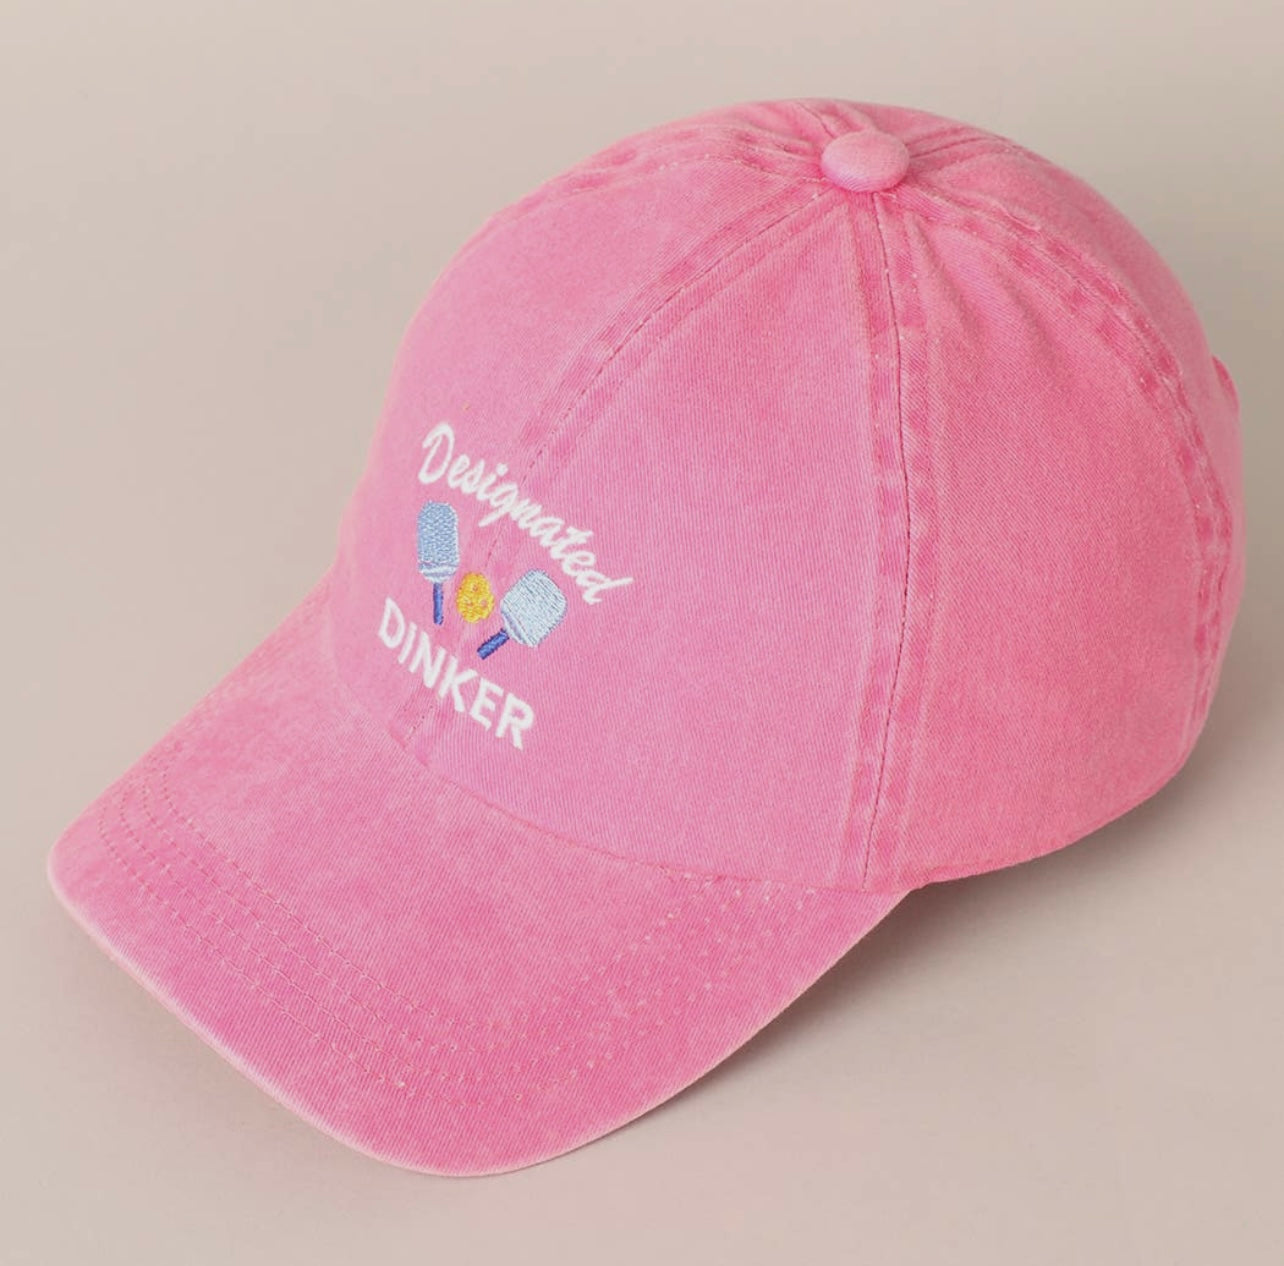 Designated Dinker Hat